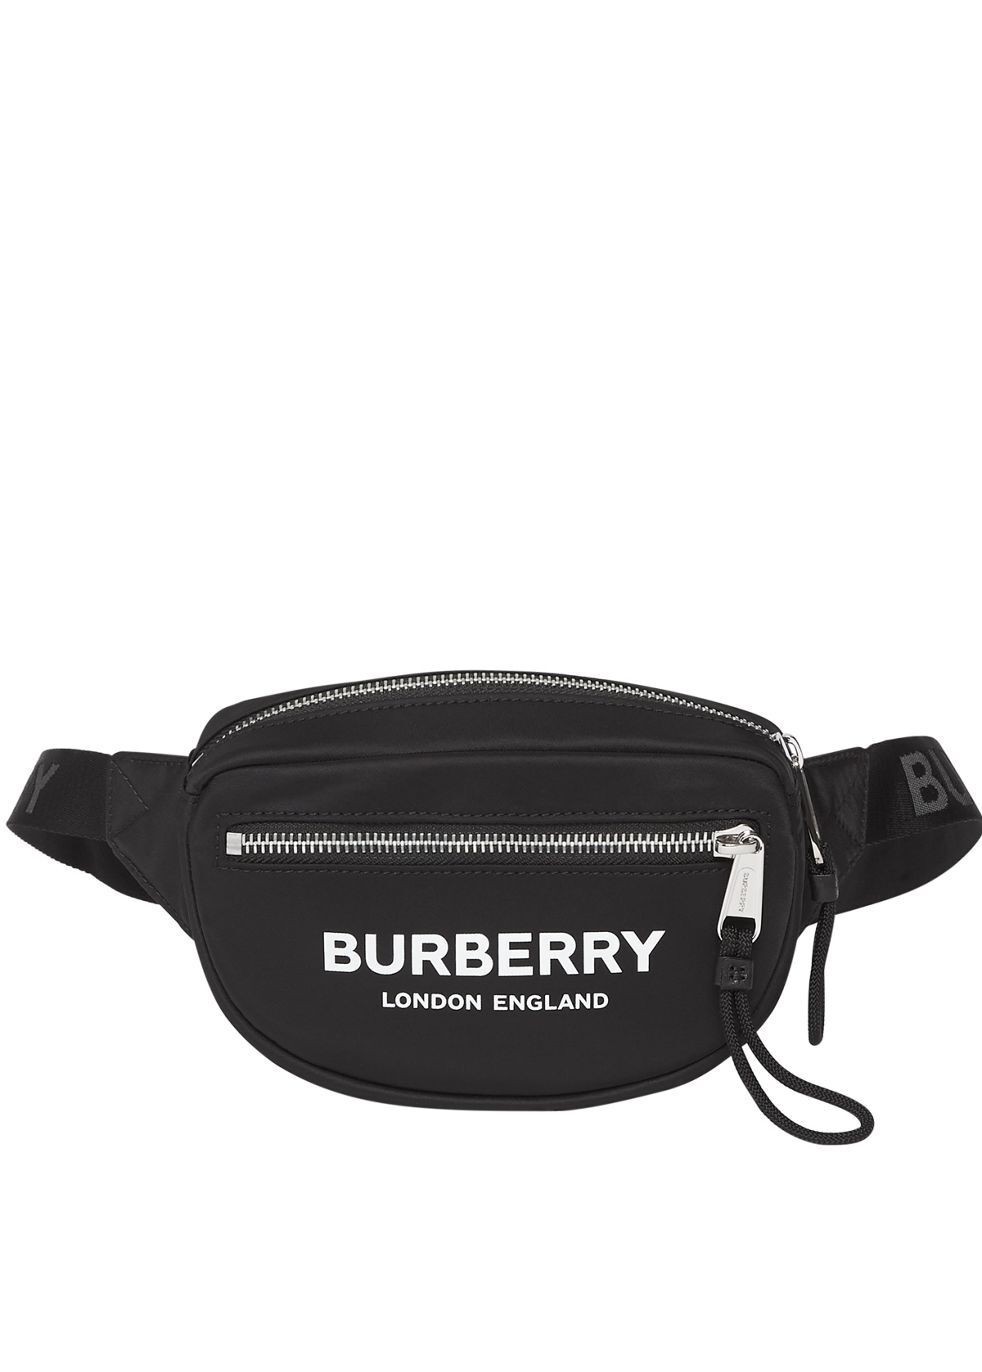 bum bag burberry